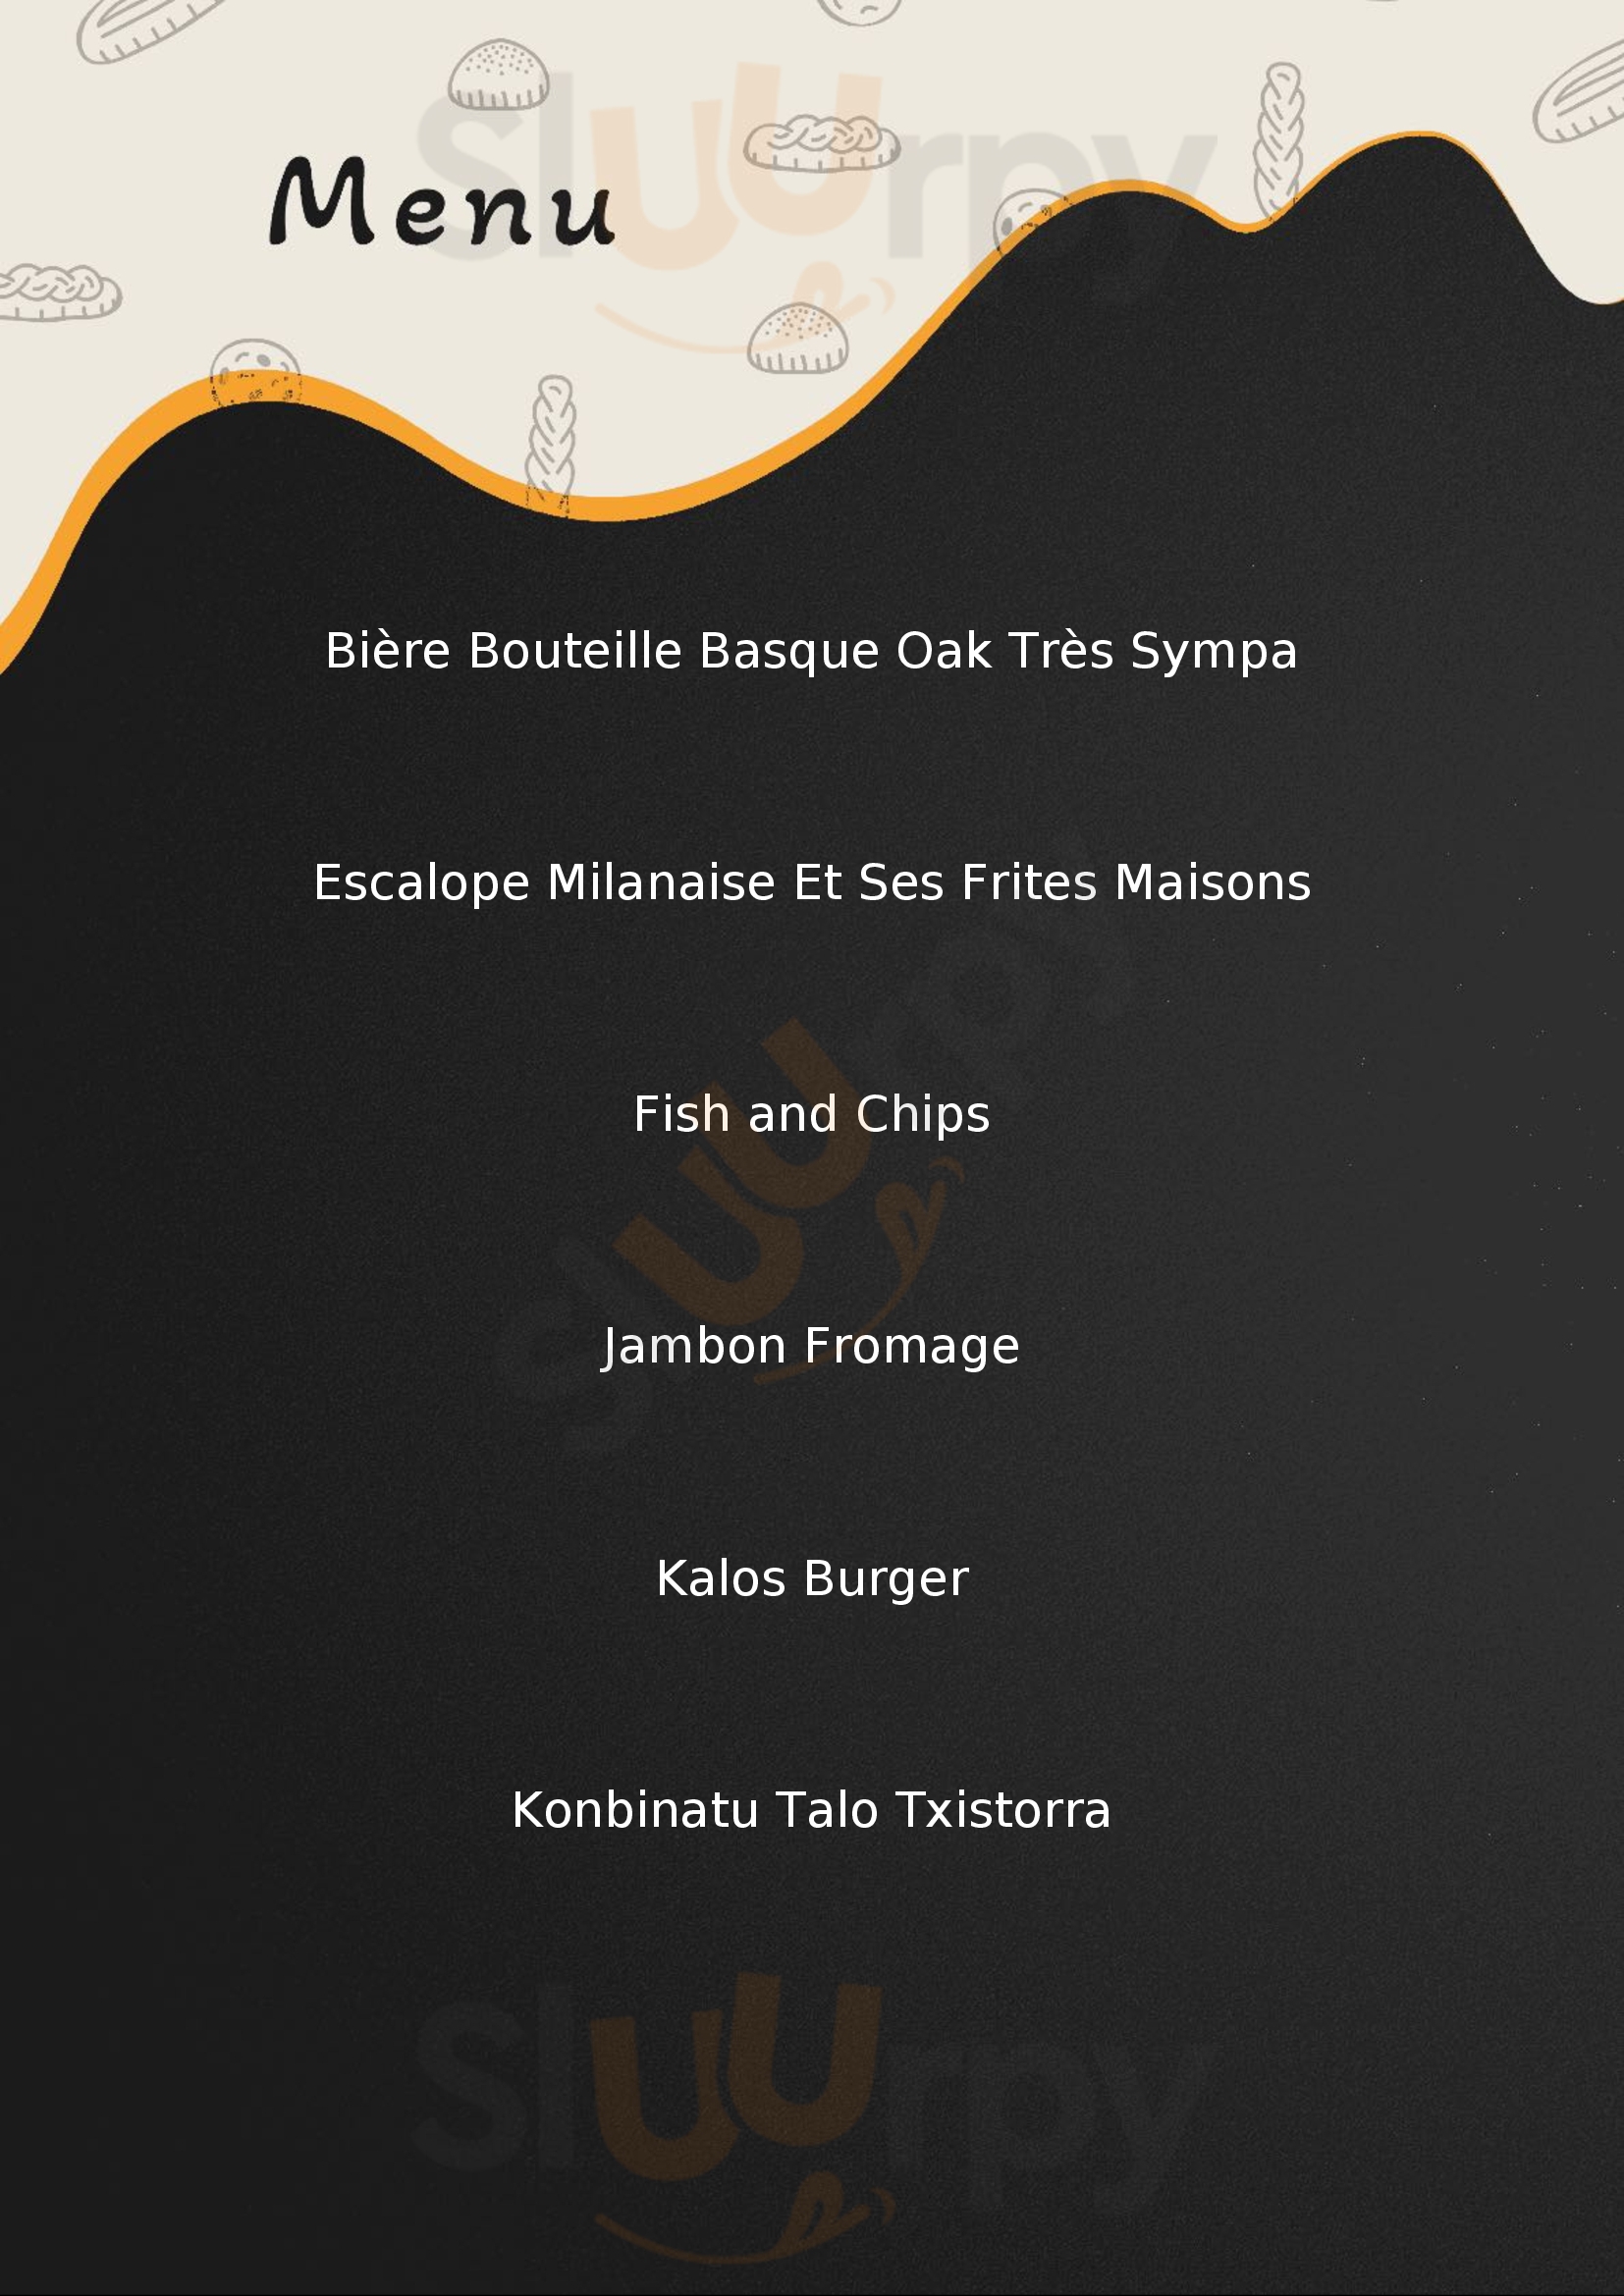 Restaurant Kalostrape Bayonne Bayonne Menu - 1